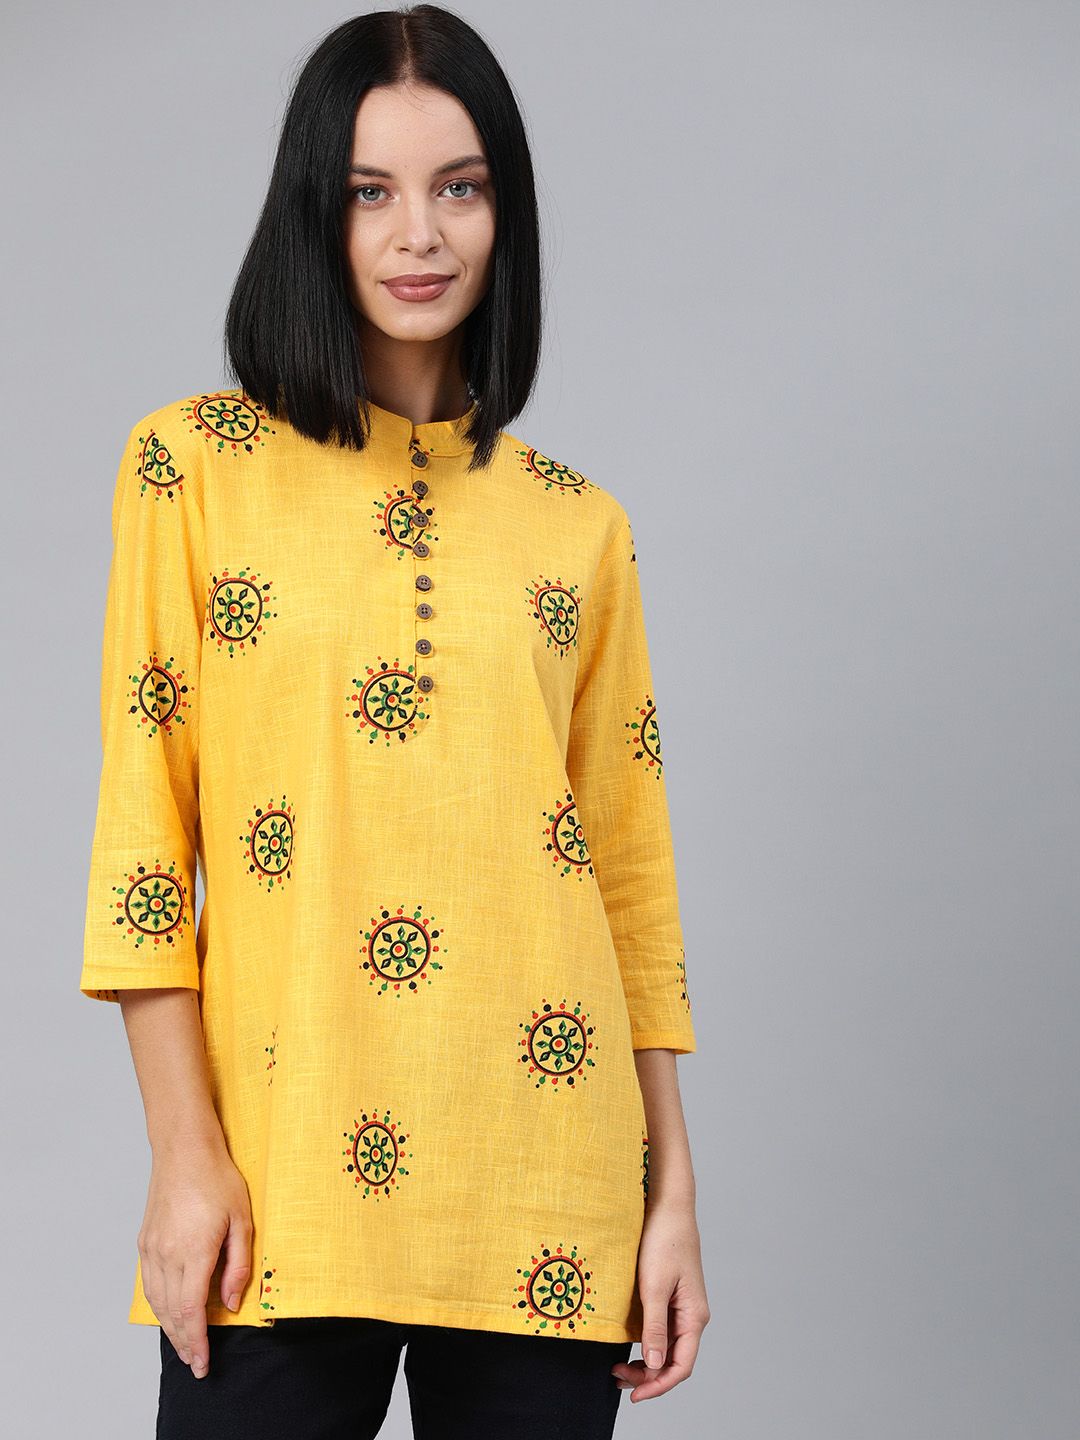 Swishchick Women's Yellow Ethnic Printed Tunic Price in India